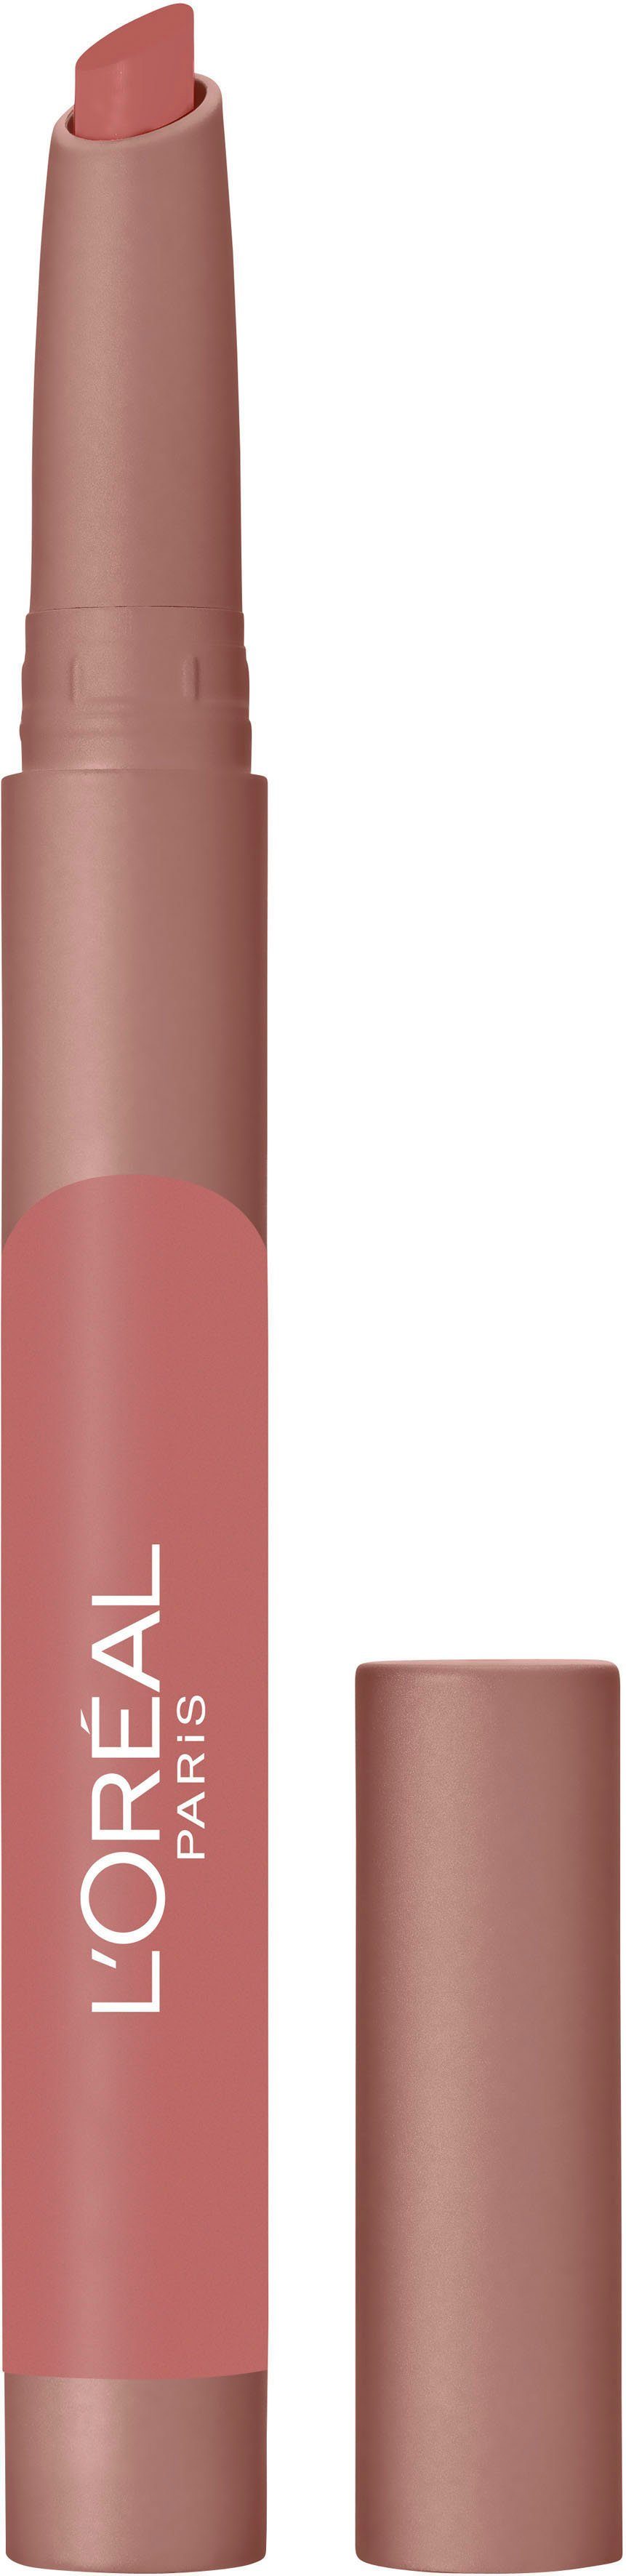 L'ORÉAL PROFESSIONNEL PARIS L'ORÉAL Lip Lippenstift Crayon 102 Caramel Blondie PARIS Infaillible Matte